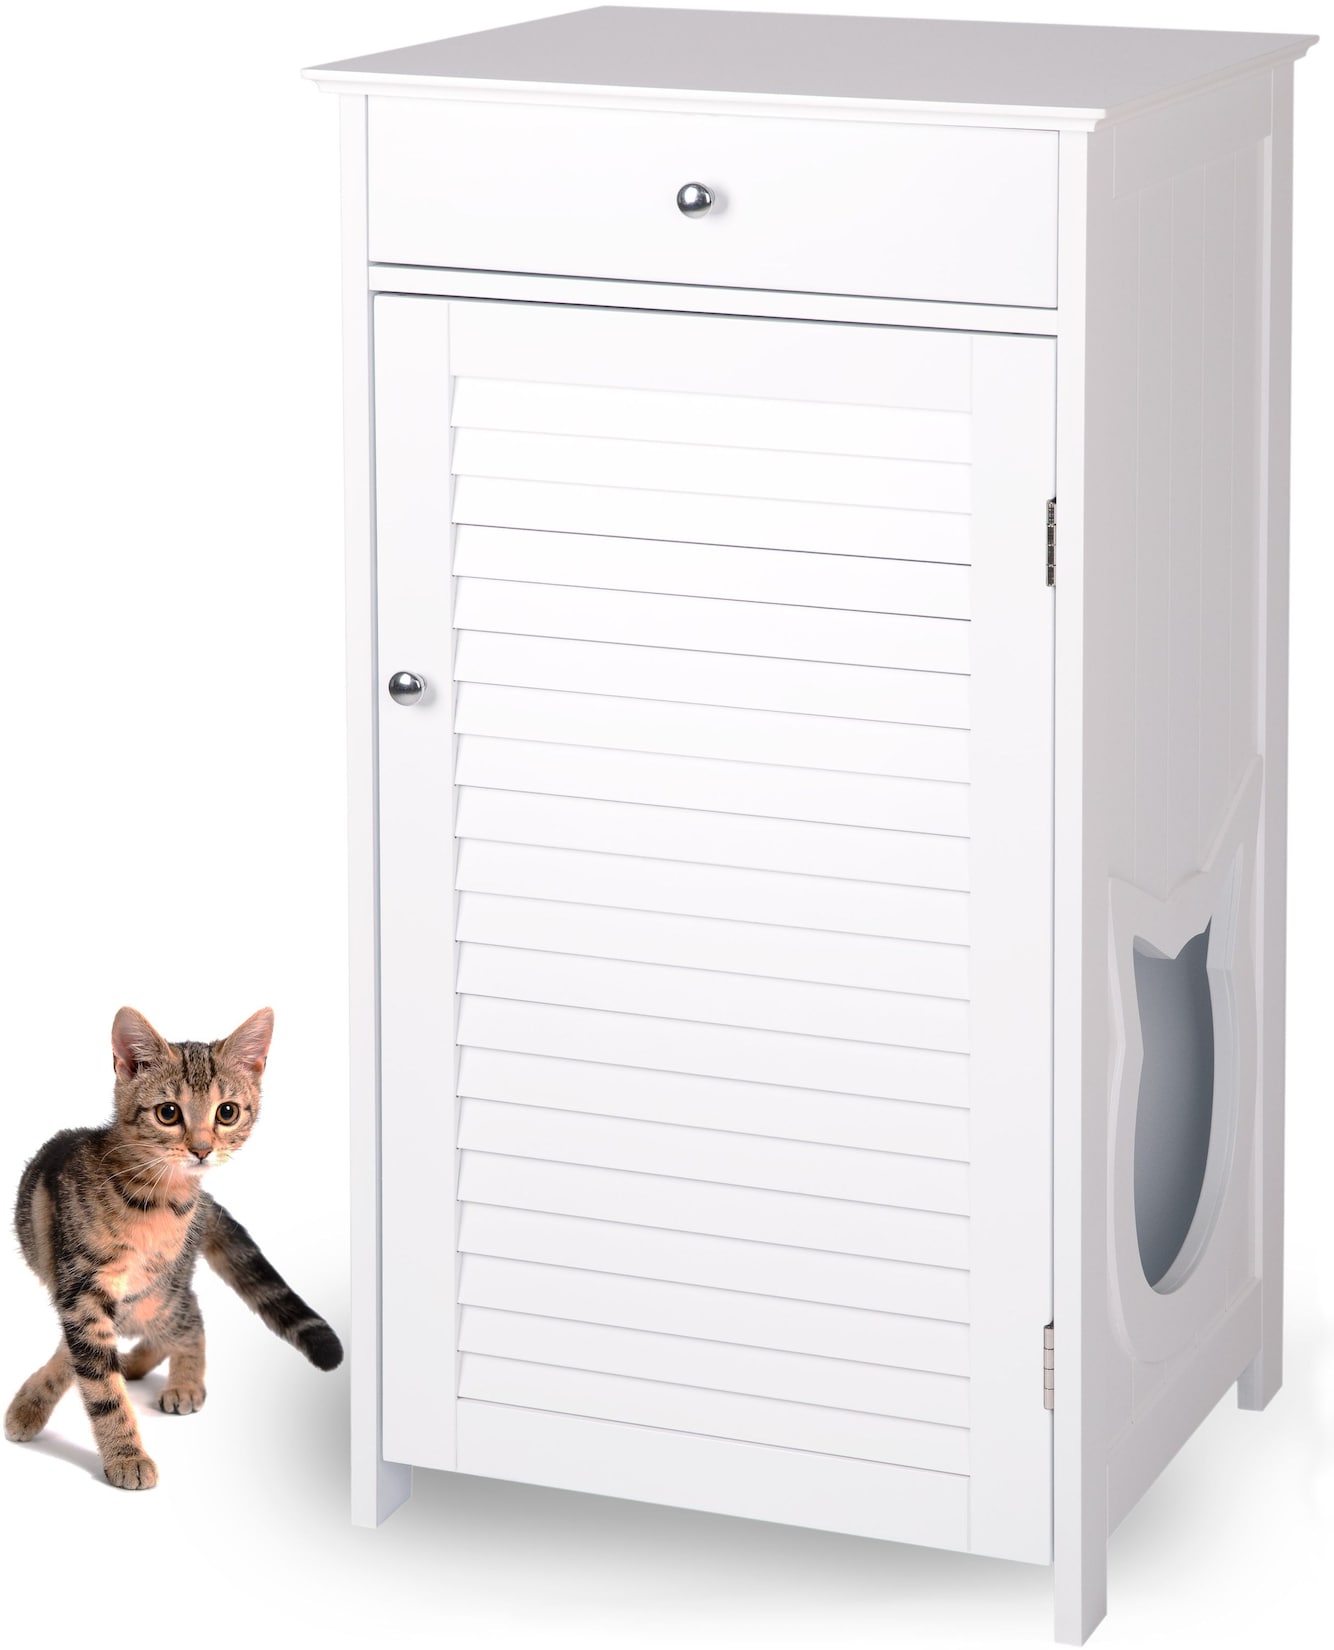 WONDERMAKE® Katzenschrank für Katzentoilette groß hoch aus Holz, Katzenklo-Schrank Kommode mit Schublade und Tür geschlo